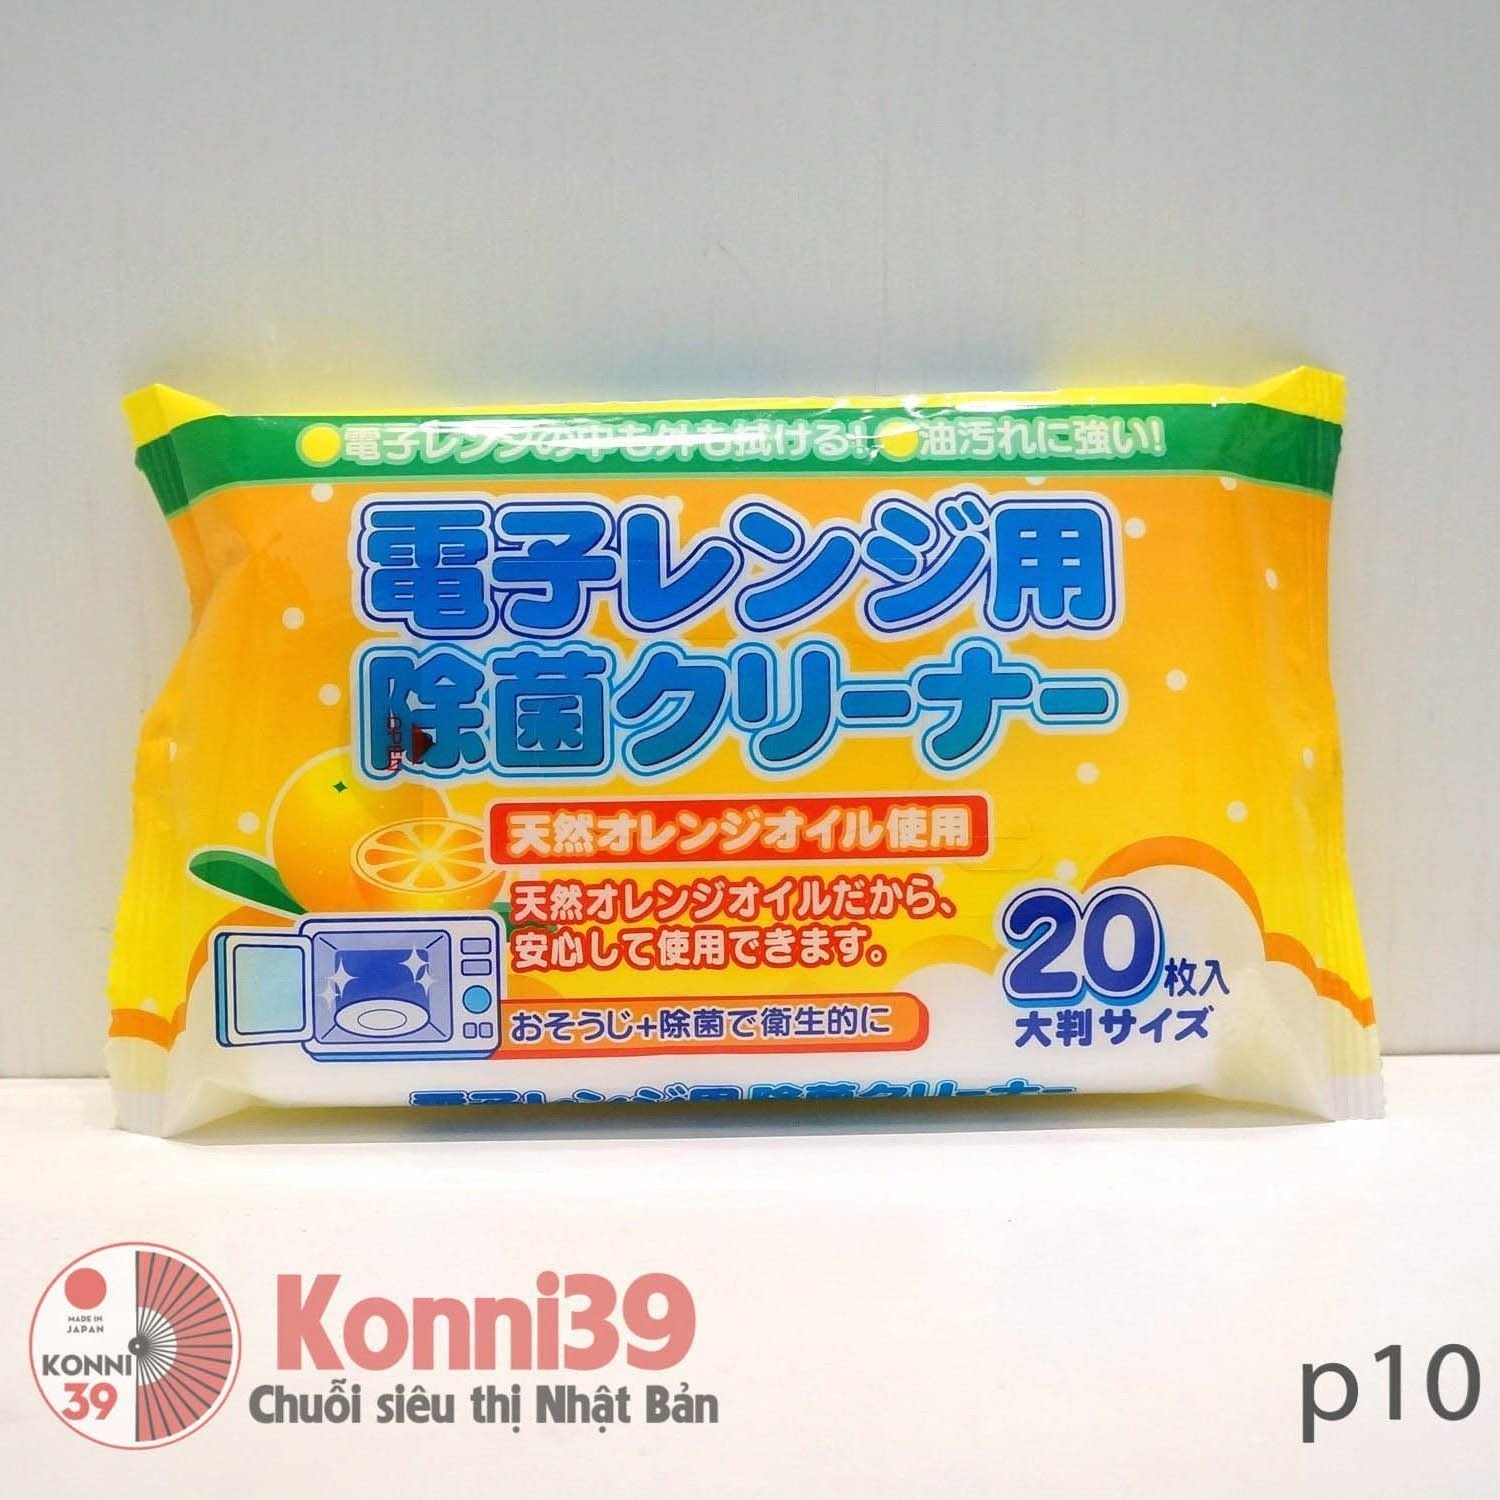 Khăn lau lò vi sóng Nippan 20 tờ-hàng đồng giá Nhật Bản - MADE IN JAPAN Konni39 tại Việt Nam